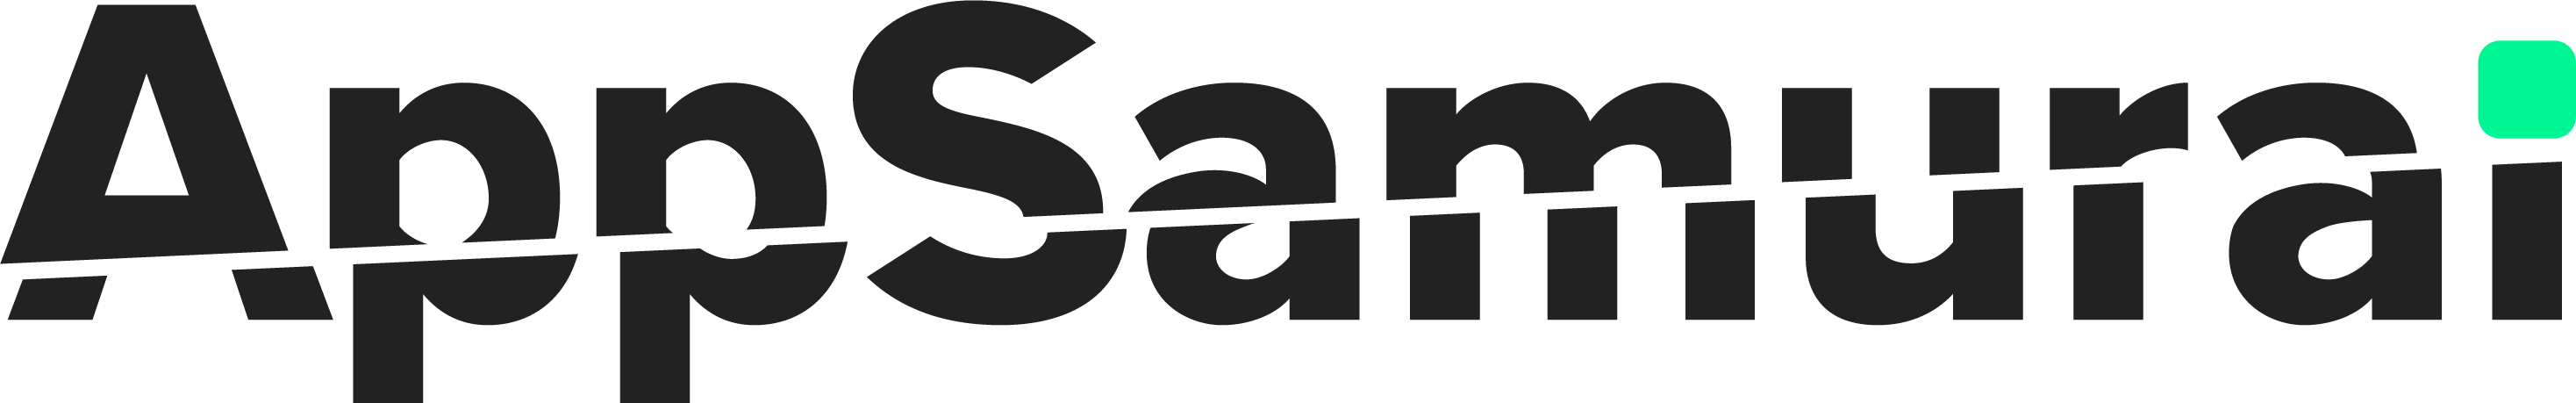 AppSamurai_Black-Green Logo-1